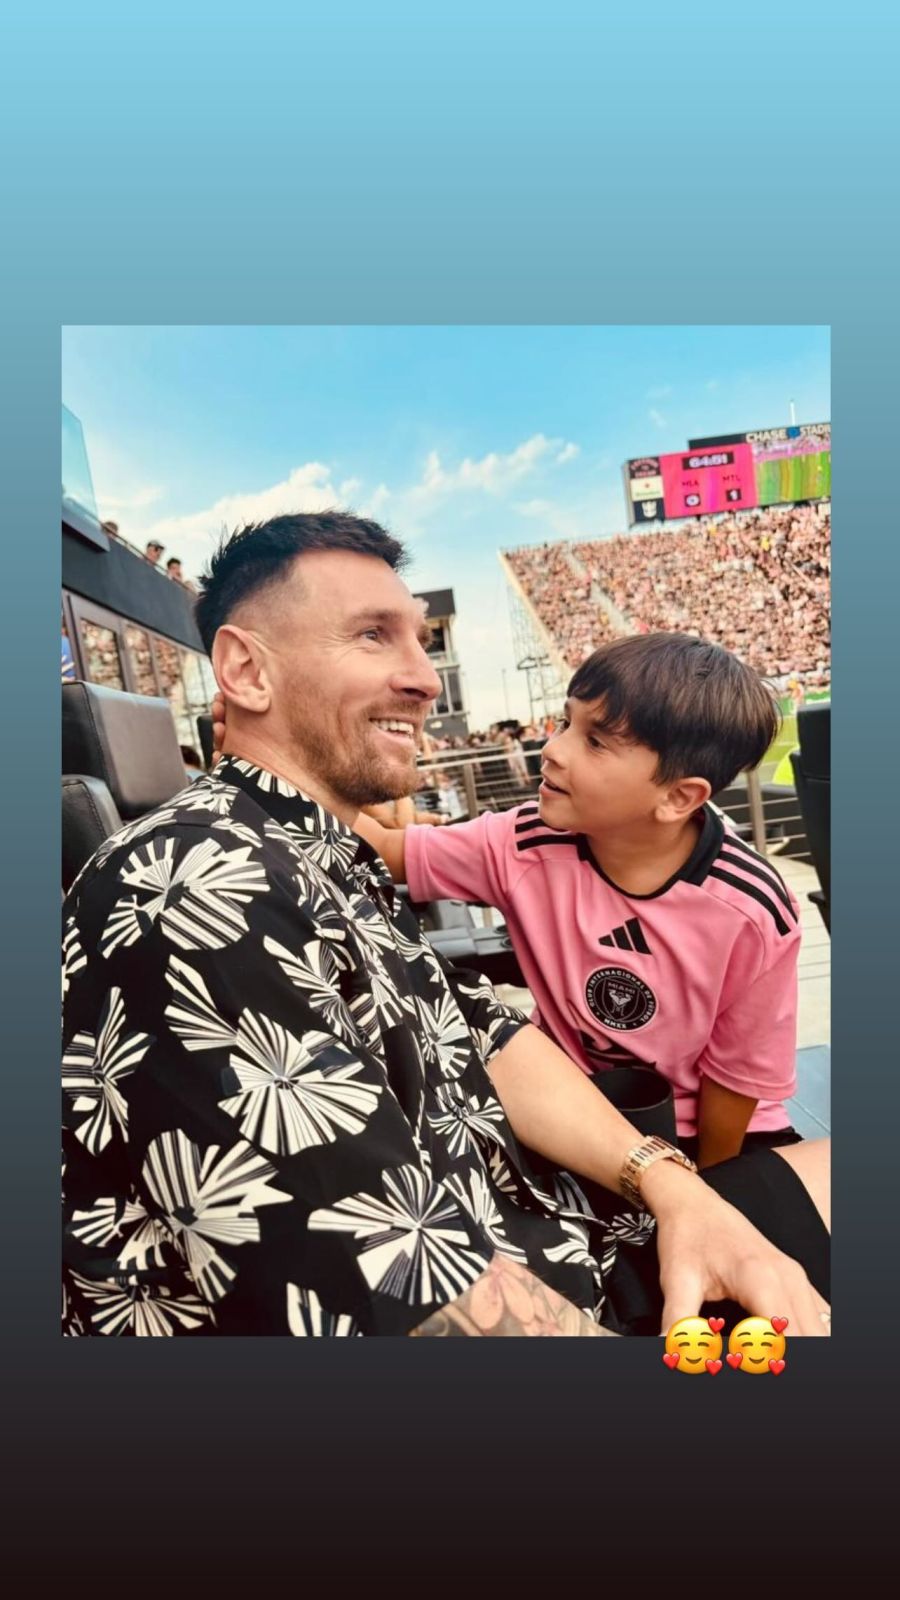 Antonela Roccuzzo felicitó a Lionel Messi en su cumpleaños con un tierno mensaje y fotos inéditas